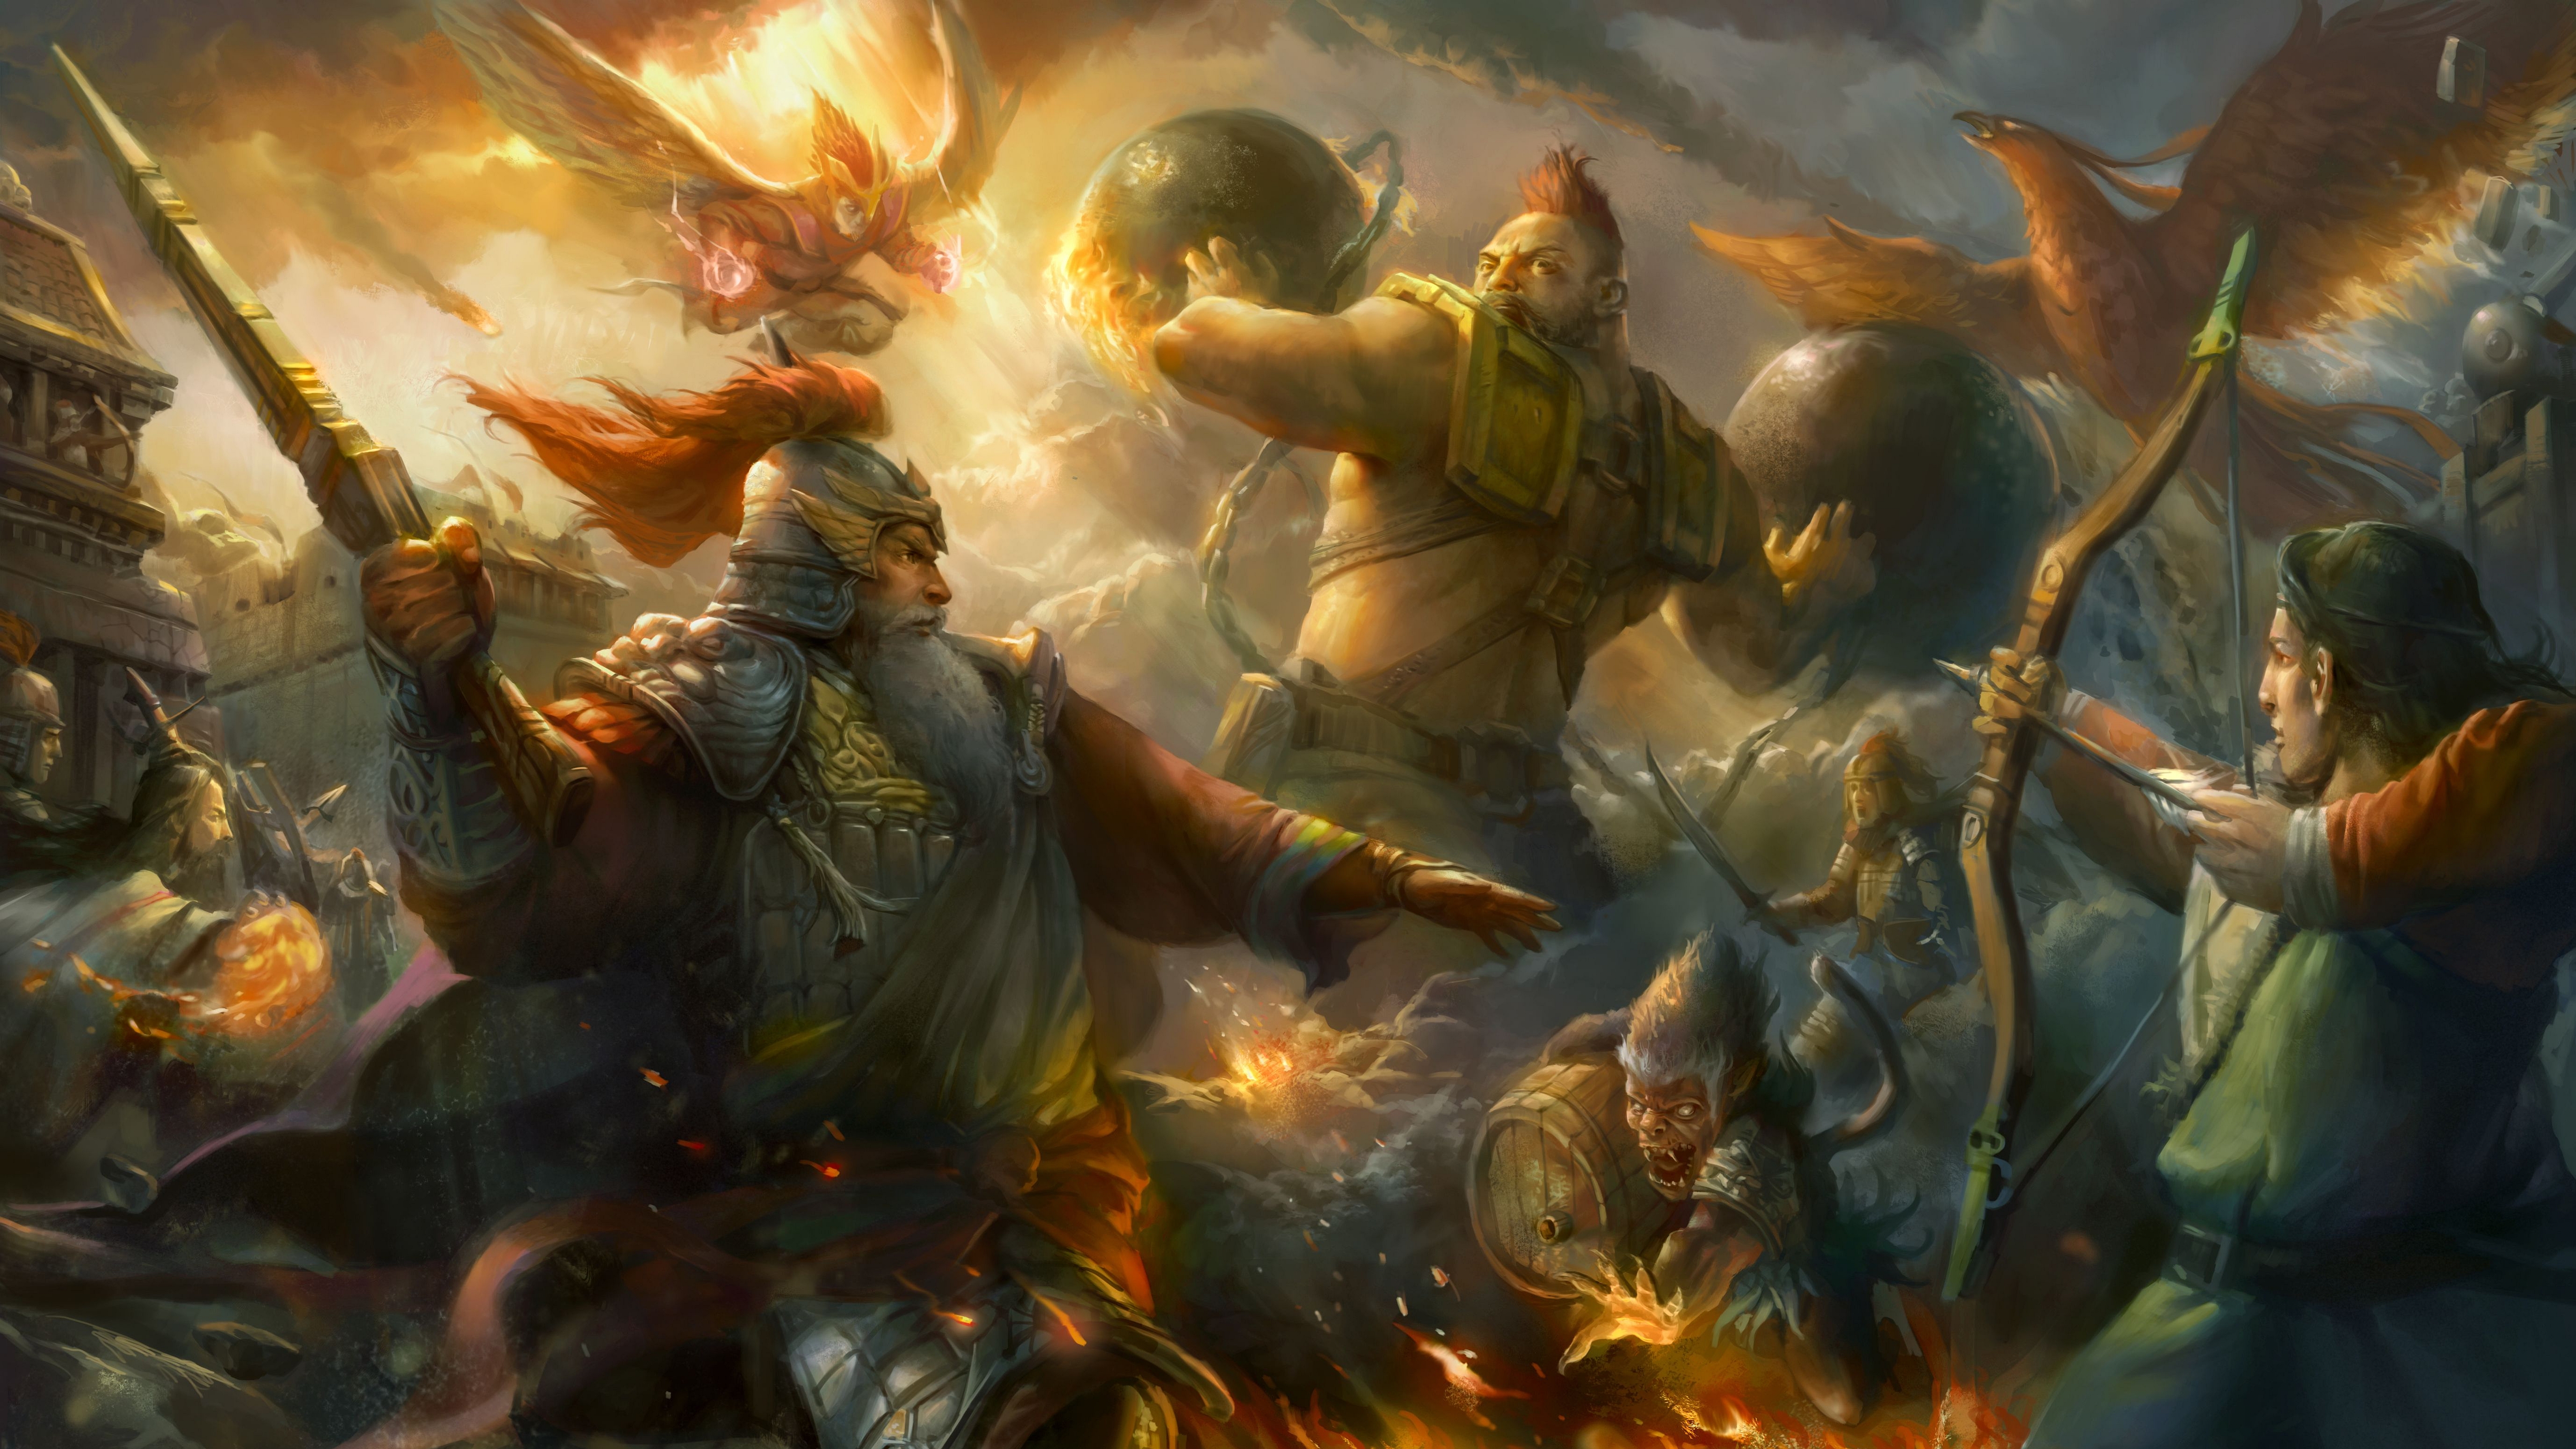 Epic Battle Fantasy 4k Ultra HD Wallpaper Background Image